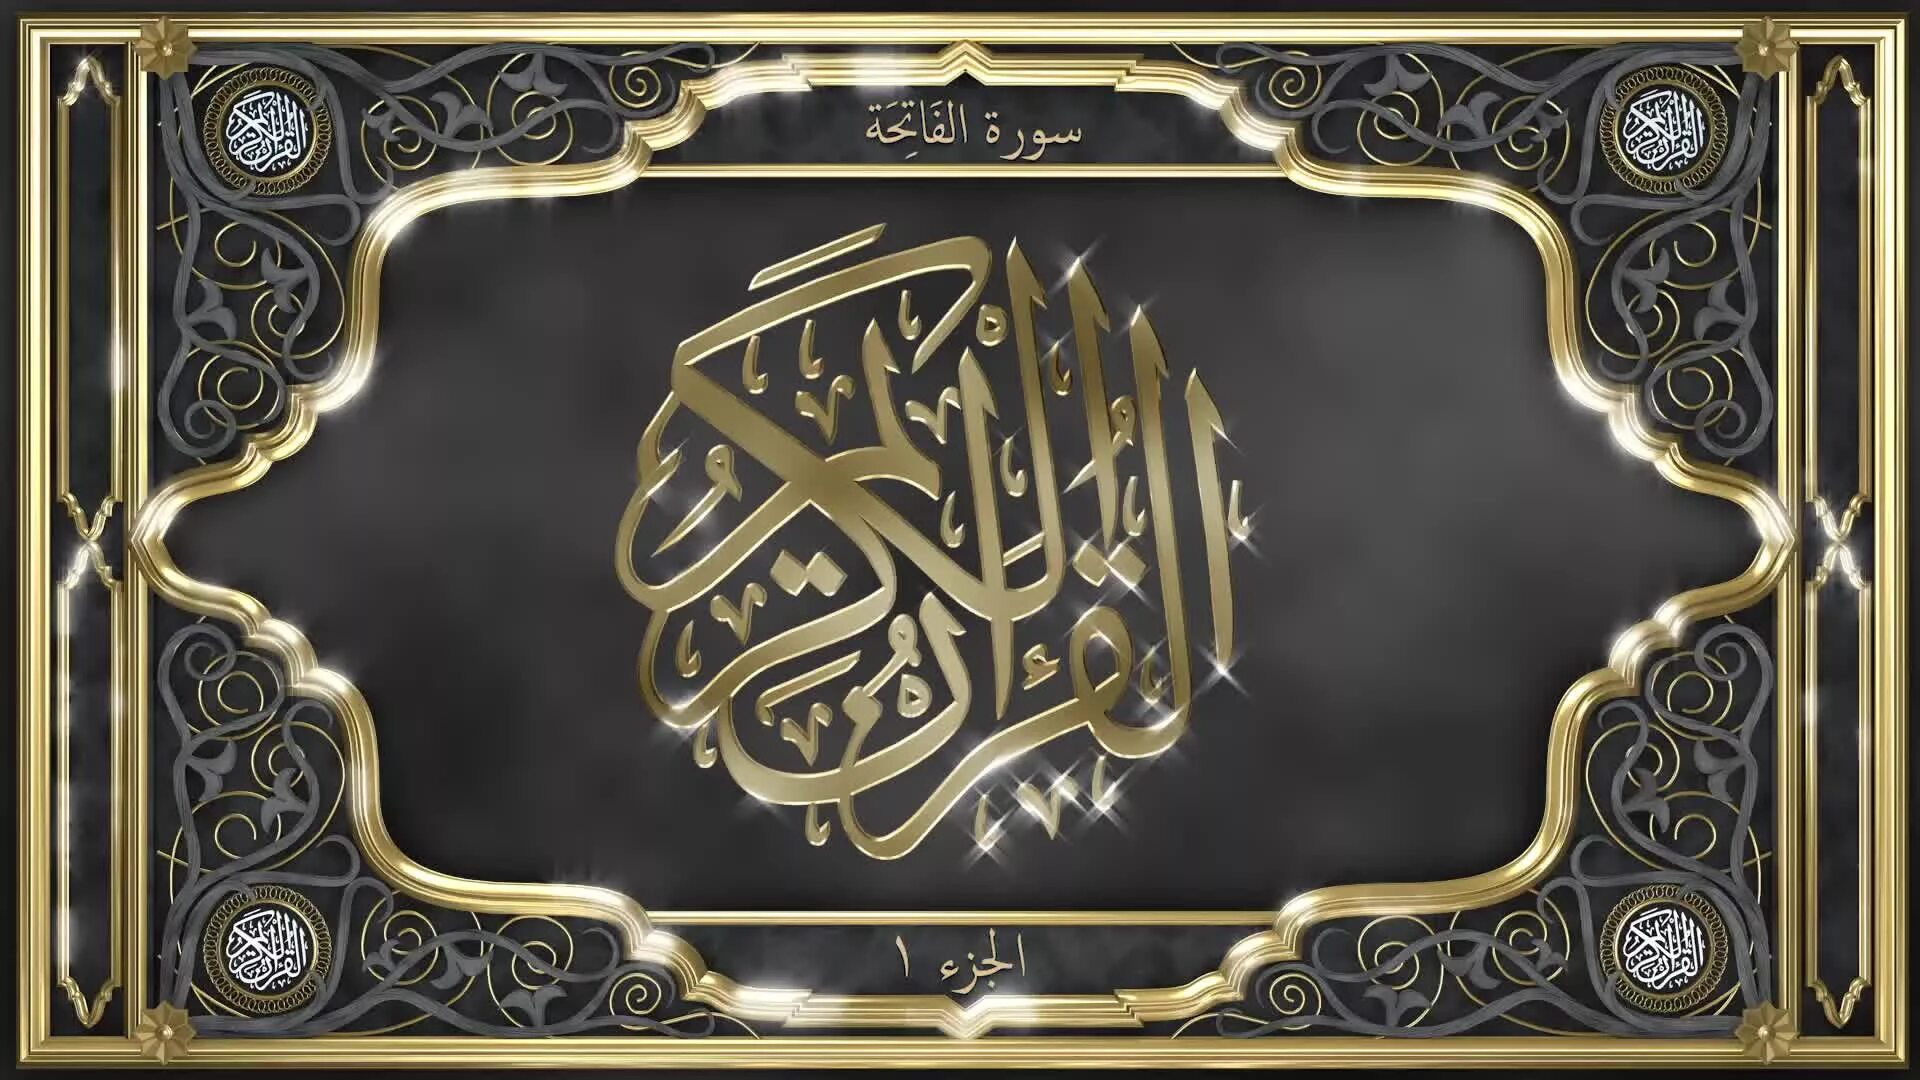 Аль Фатиха каллиграфия на арабском. Сура Аль Фатиха каллиграфия. Рамка для Корана. Сура Аль Фатиха на арабском. Красивый аль фатиха